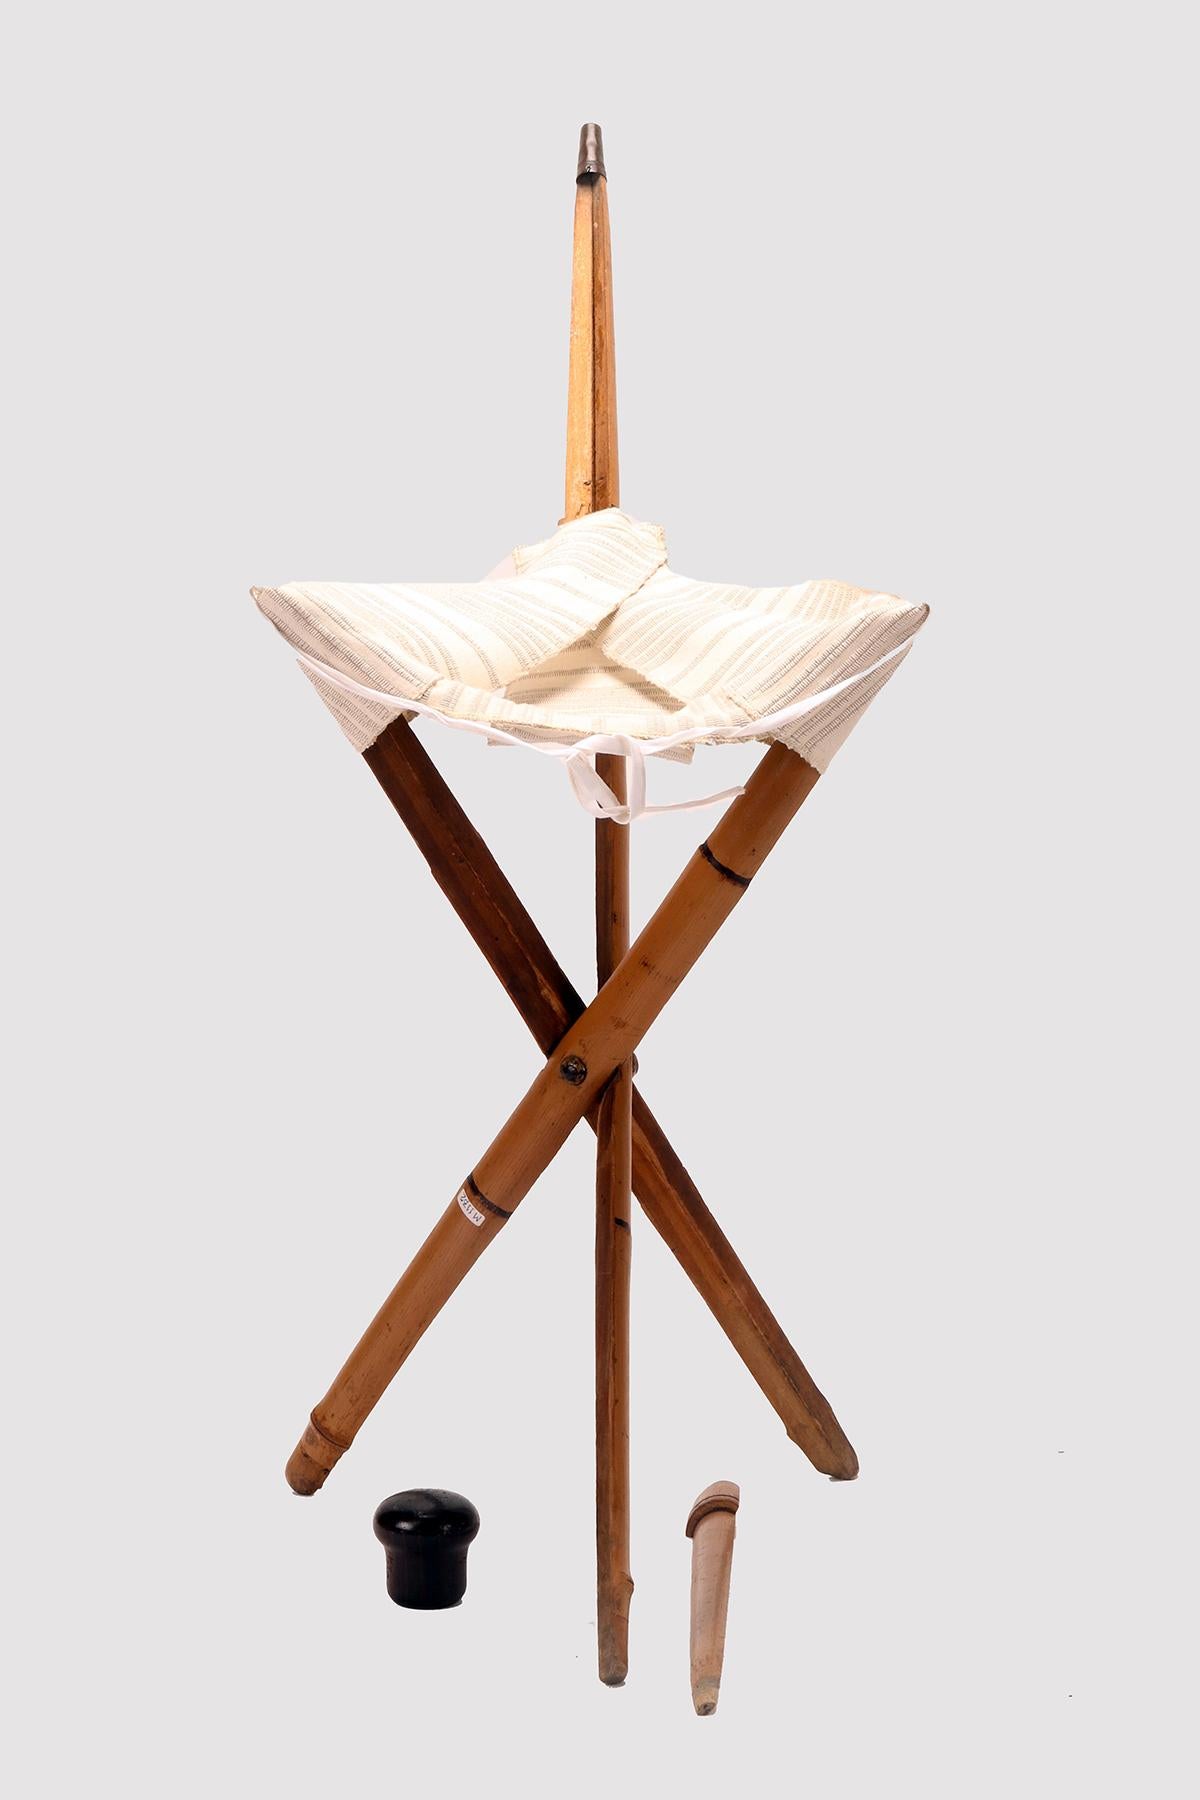 System Spazierstock: Fischersitz, sehr beliebt für seine Konstruktion Einfachheit. Der aus dickem Bambusholz gefertigte Schaft ist in drei Teile geteilt. Der dreieckige Stoffteil wird separat getragen und bei der Benutzung in den drei Teilen des